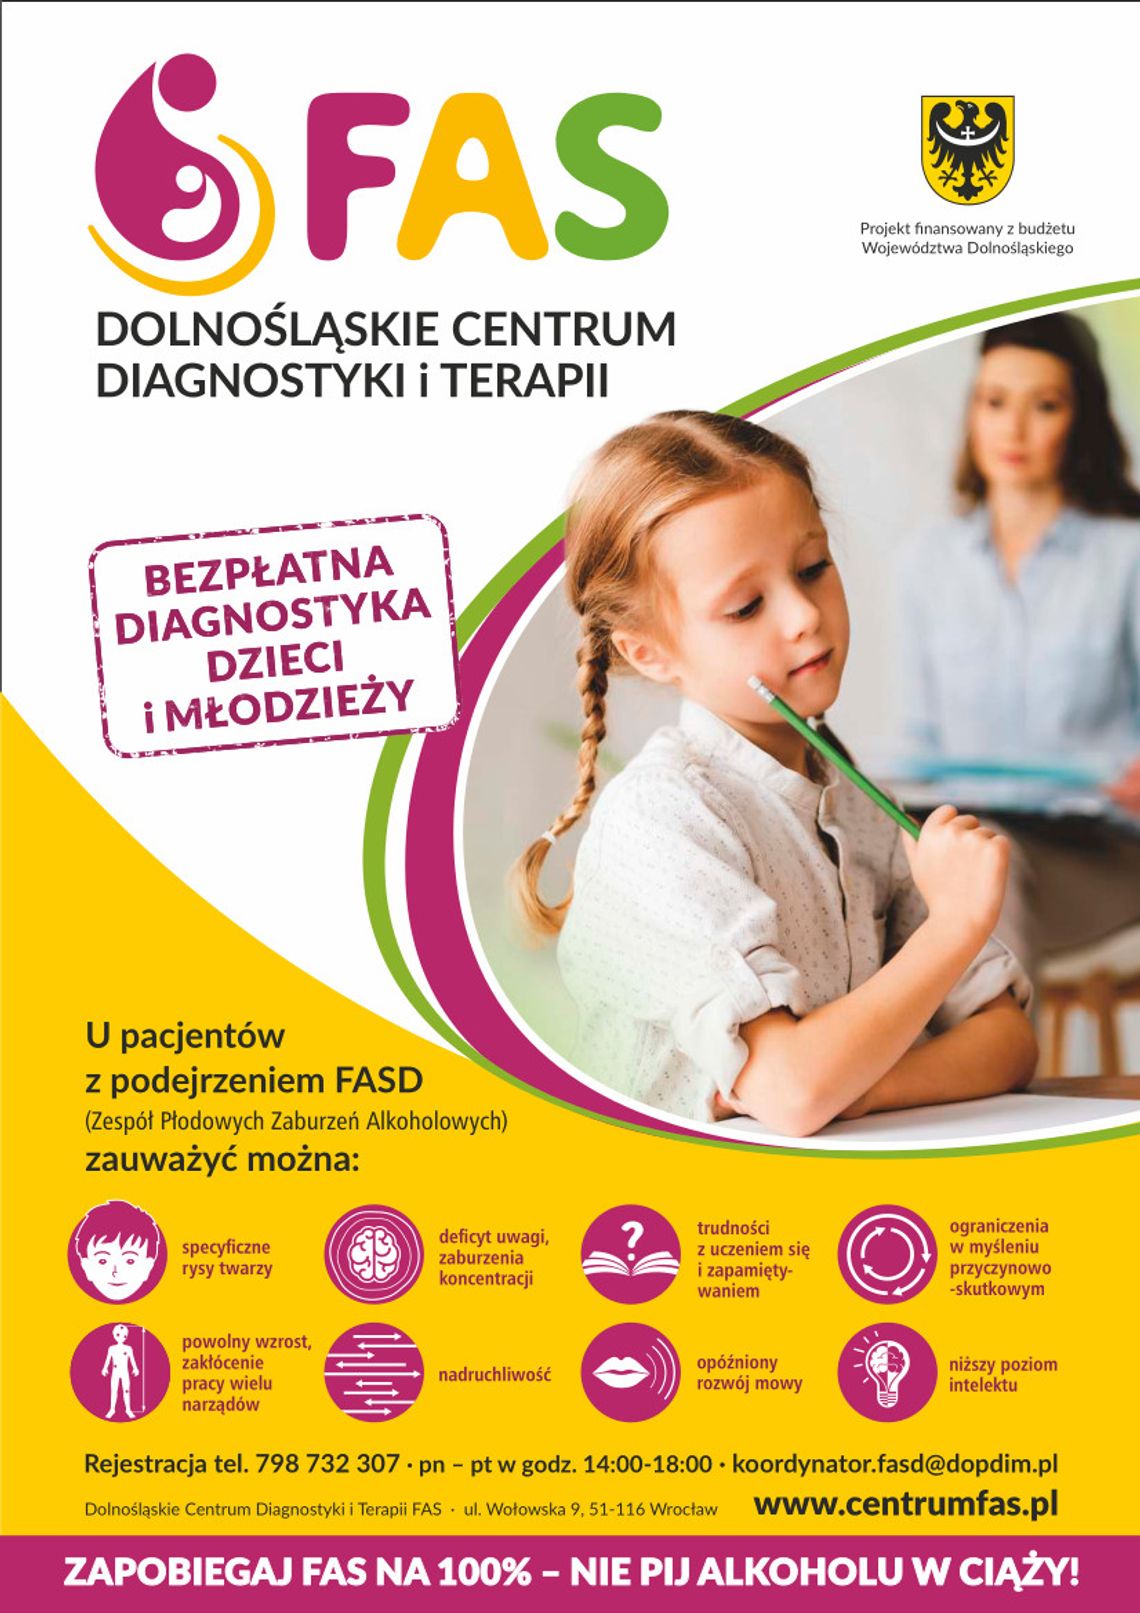 Otwarcie Dolnośląskiego Centrum Diagnostyki i Terapii FAS we Wrocławiu